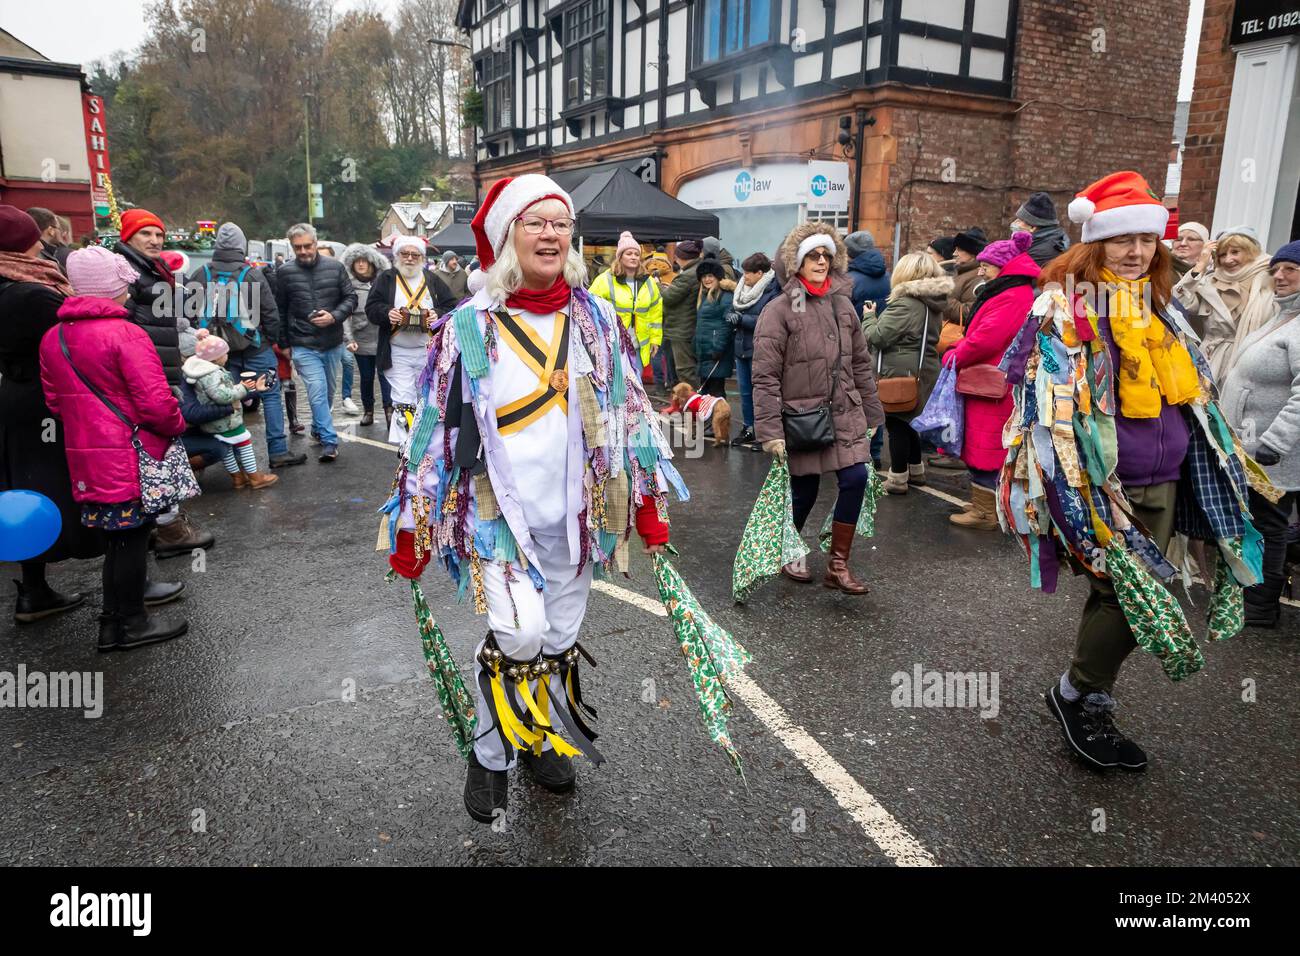 Le ballerine femminili Morris si esibiscono in strada durante la Grand Parade al Lymm Dickensian Christmas Festival Foto Stock